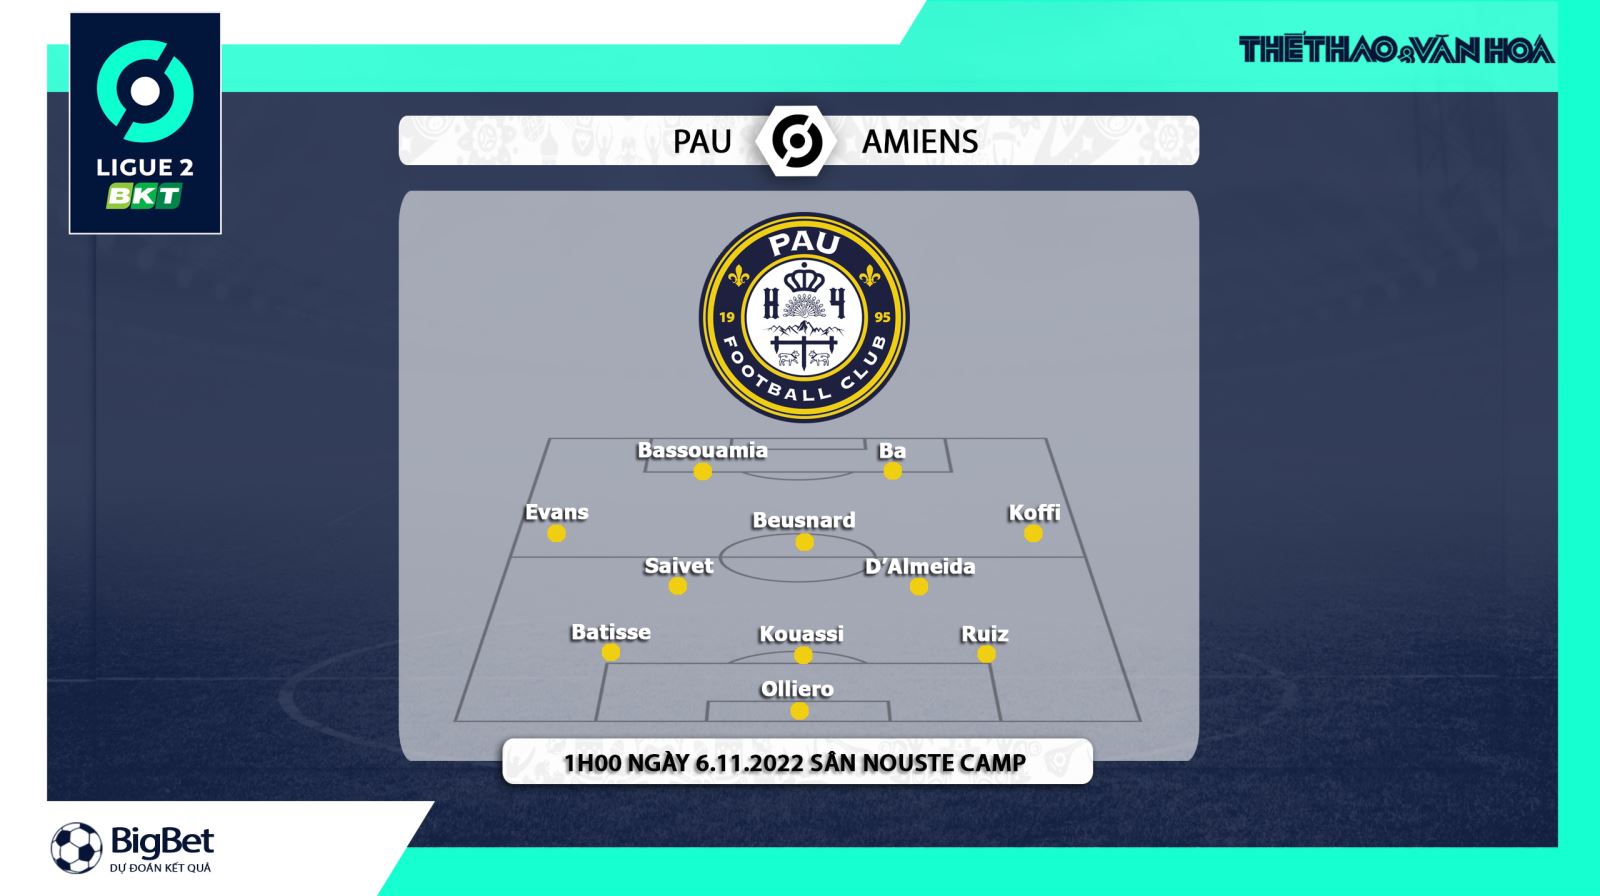 Pau FC vs Amiens, nhận định kết quả, nhận định bóng đá Pau FC vs Amiens, nhận định bóng đá, Pau FC, Amiens, keo nha cai, dự đoán bóng đá, Ligue 2, Quang Hải, Quang Hải ra sân Pau FC